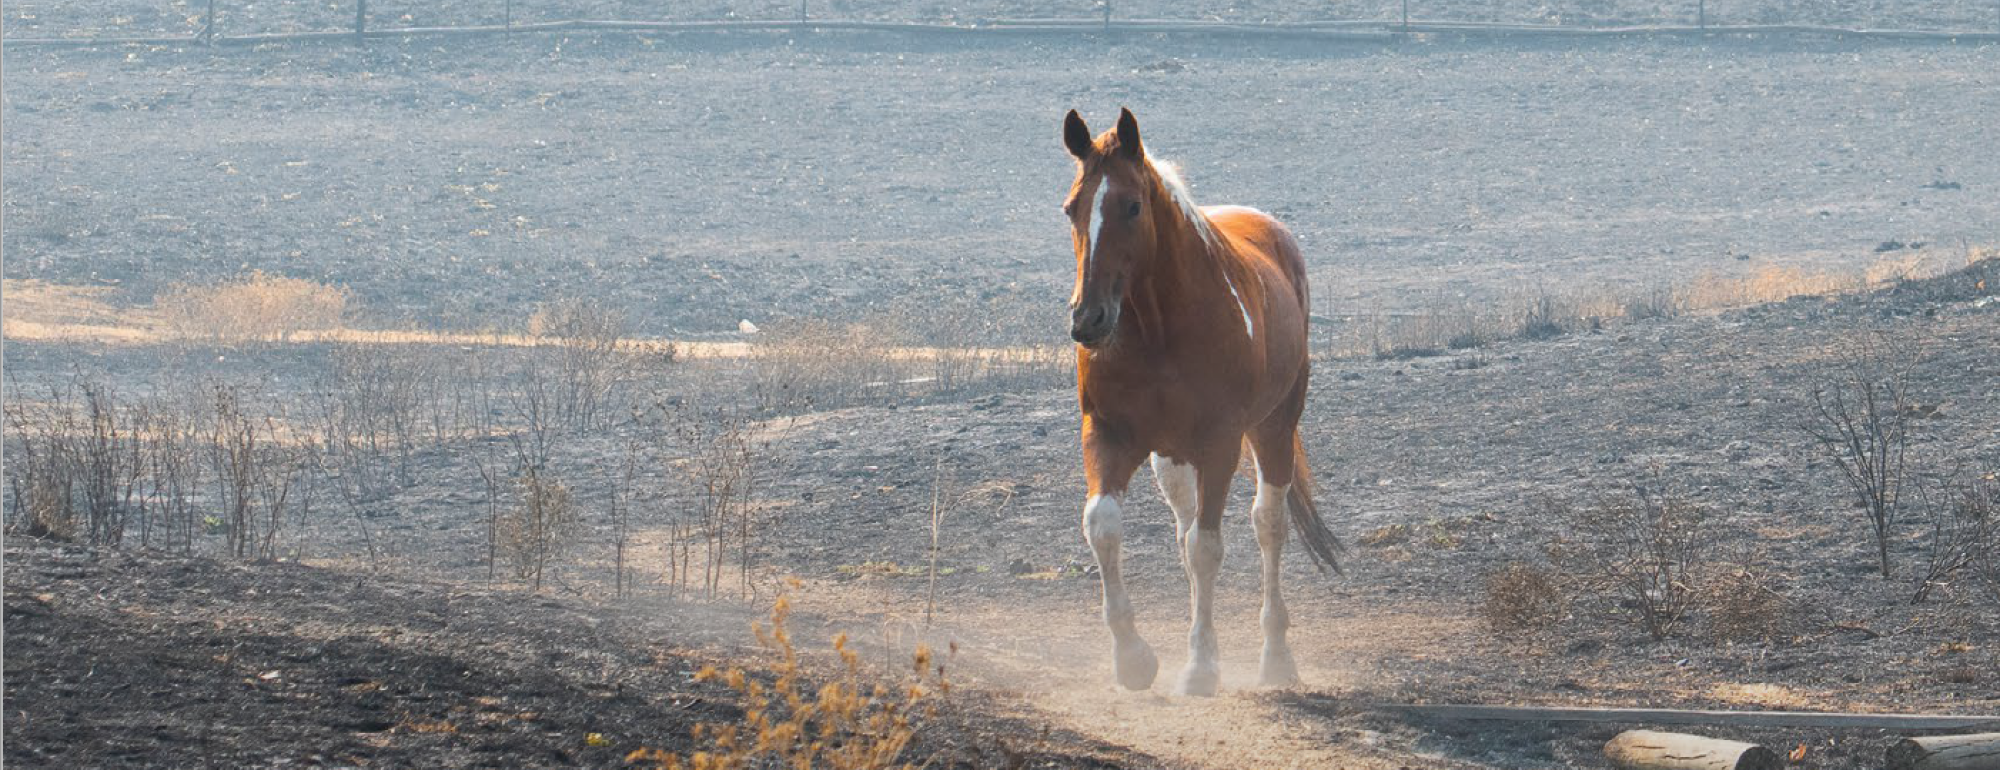 Horse in burned field